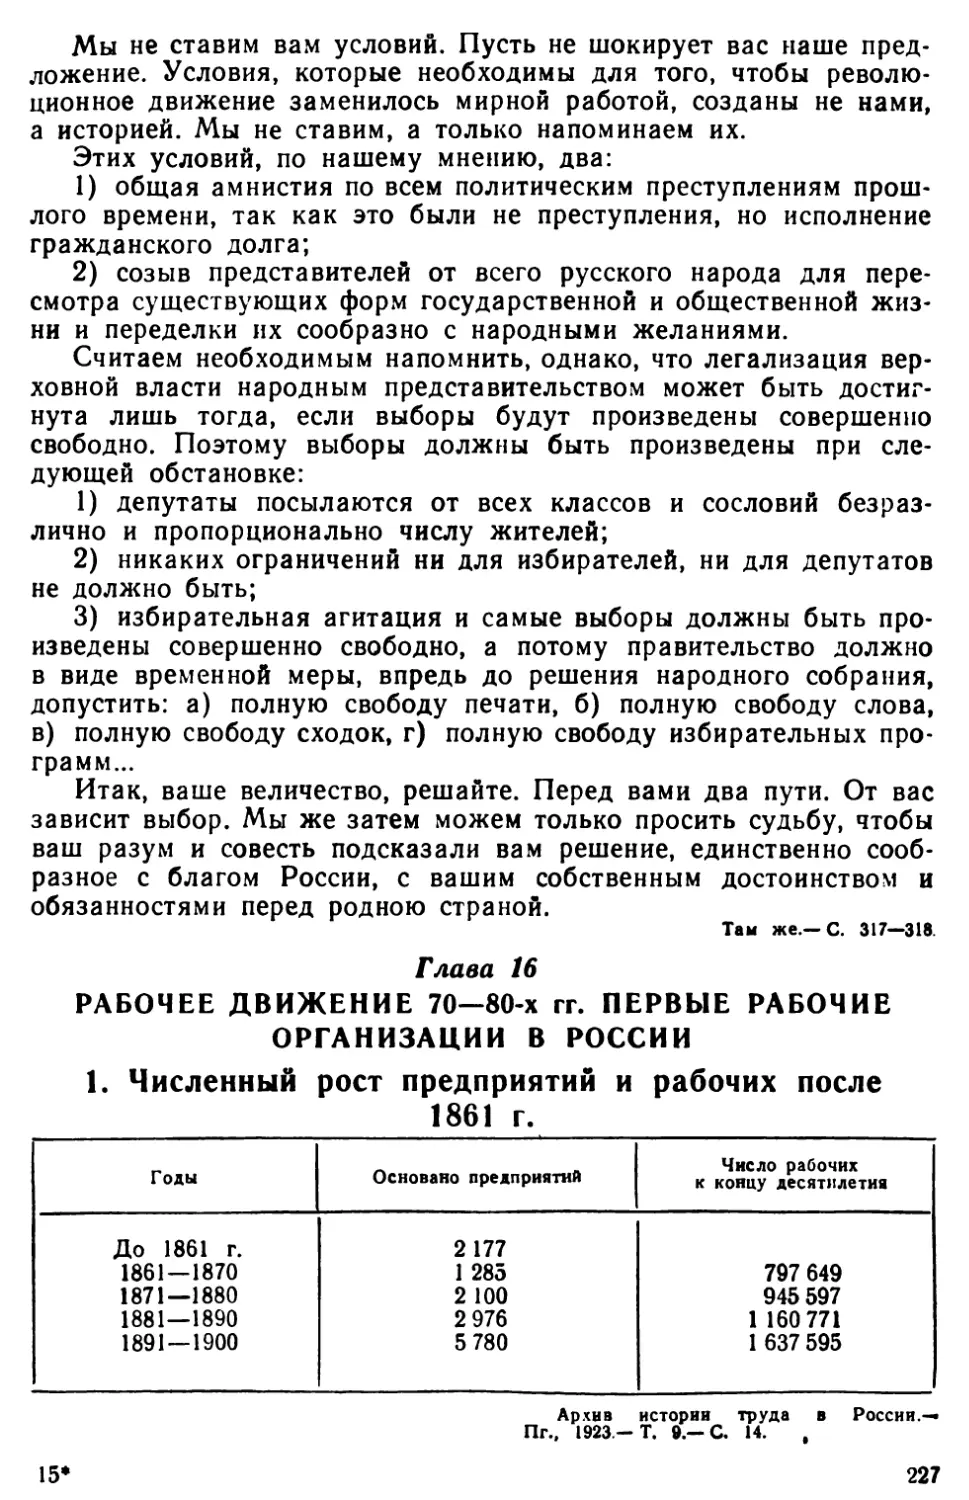 Глава 16. Рабочее движение 70—80-х гг. Первые рабочие организации в России